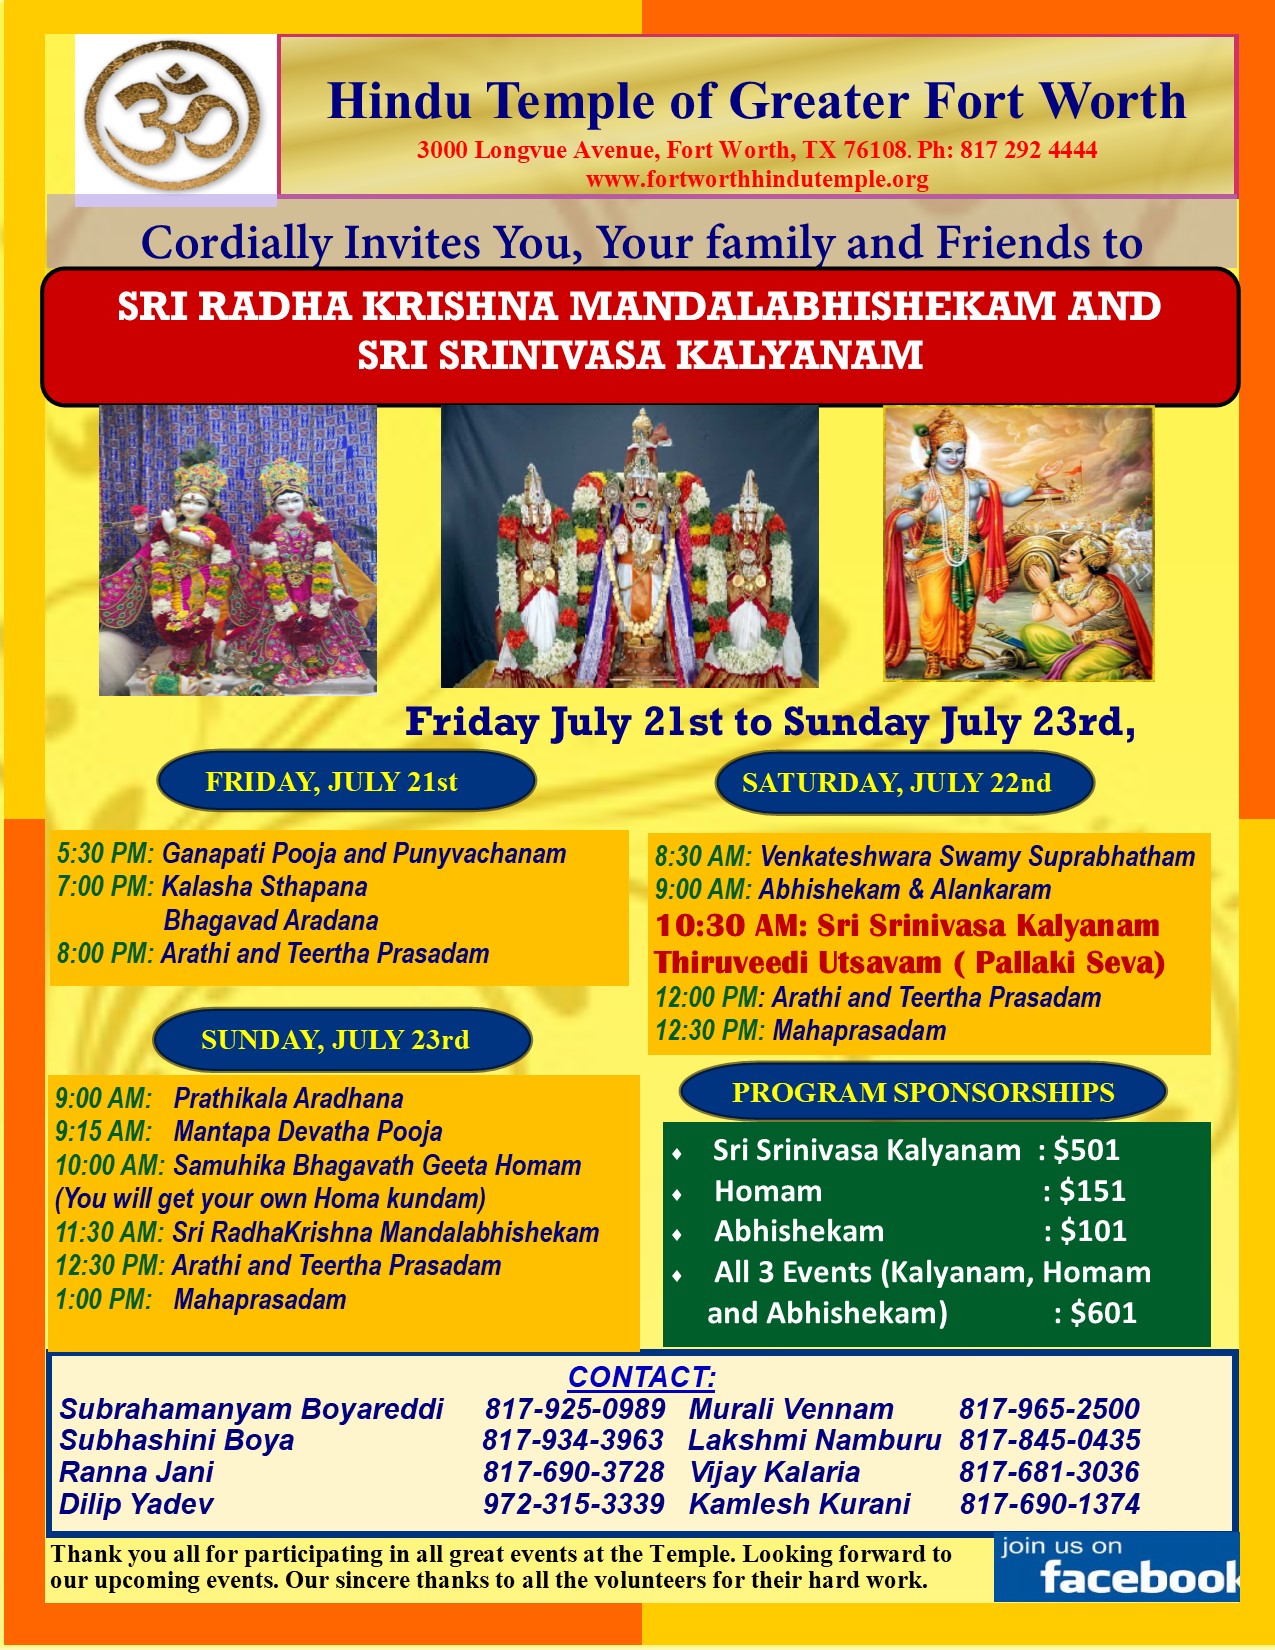 Sri Radhakrishna Mandalabhishekam and Sri Srinivasa Kalyanam